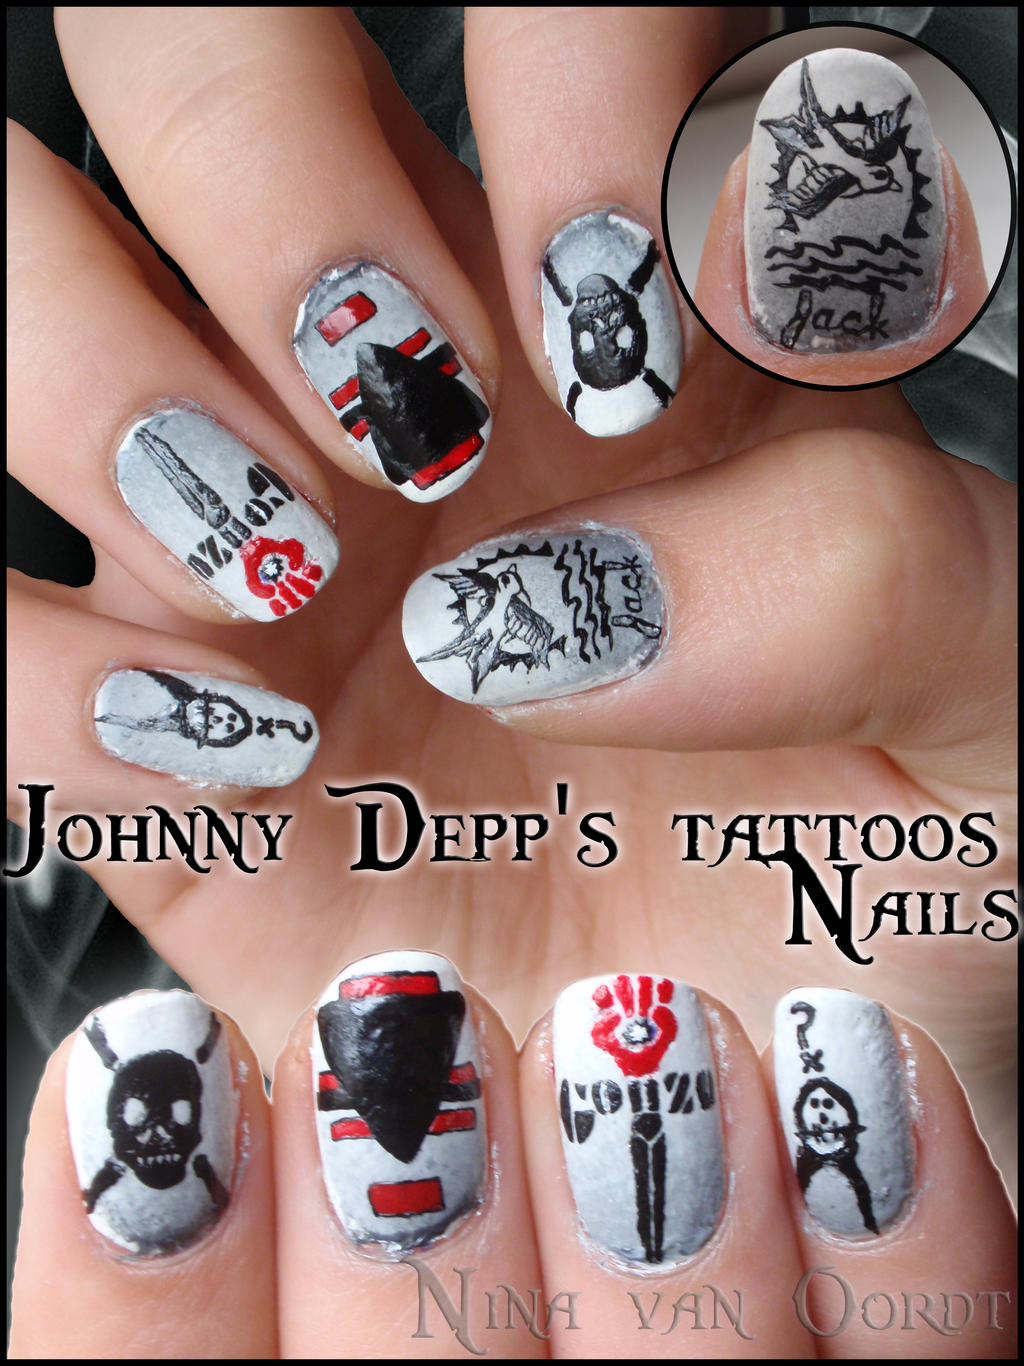 Johnny Depp's tattoos nails